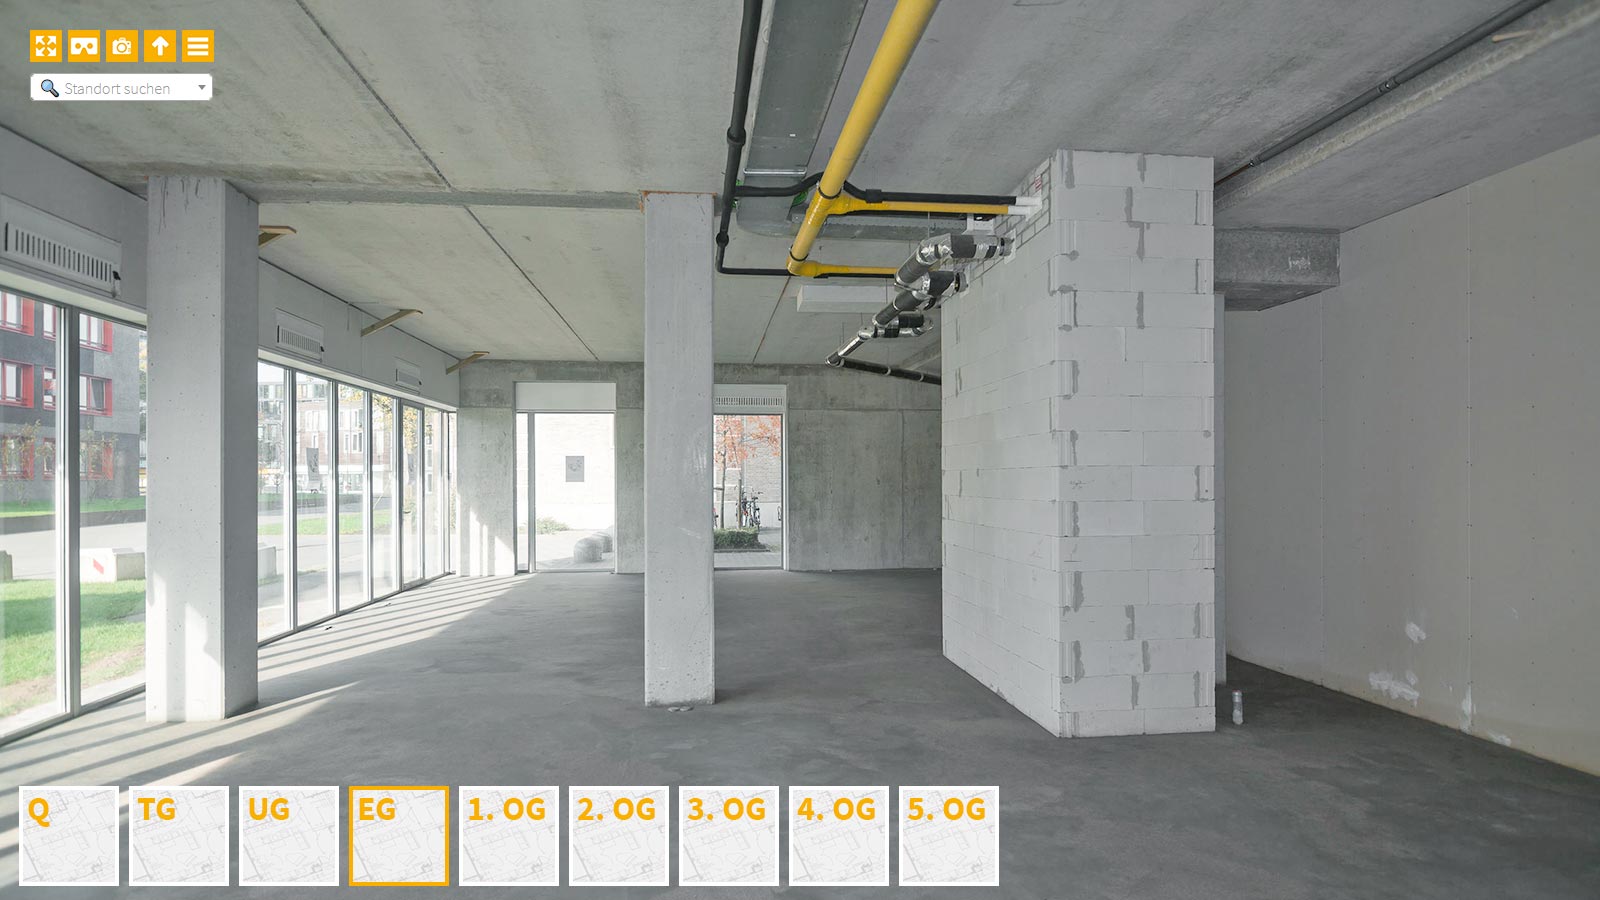 Baudokumentation 360 Grad bei gestörten Projekten in 


	


	


	


	


	


	


	


	


	


	Jena









, Bilddokumentation als virtueller Rundgang